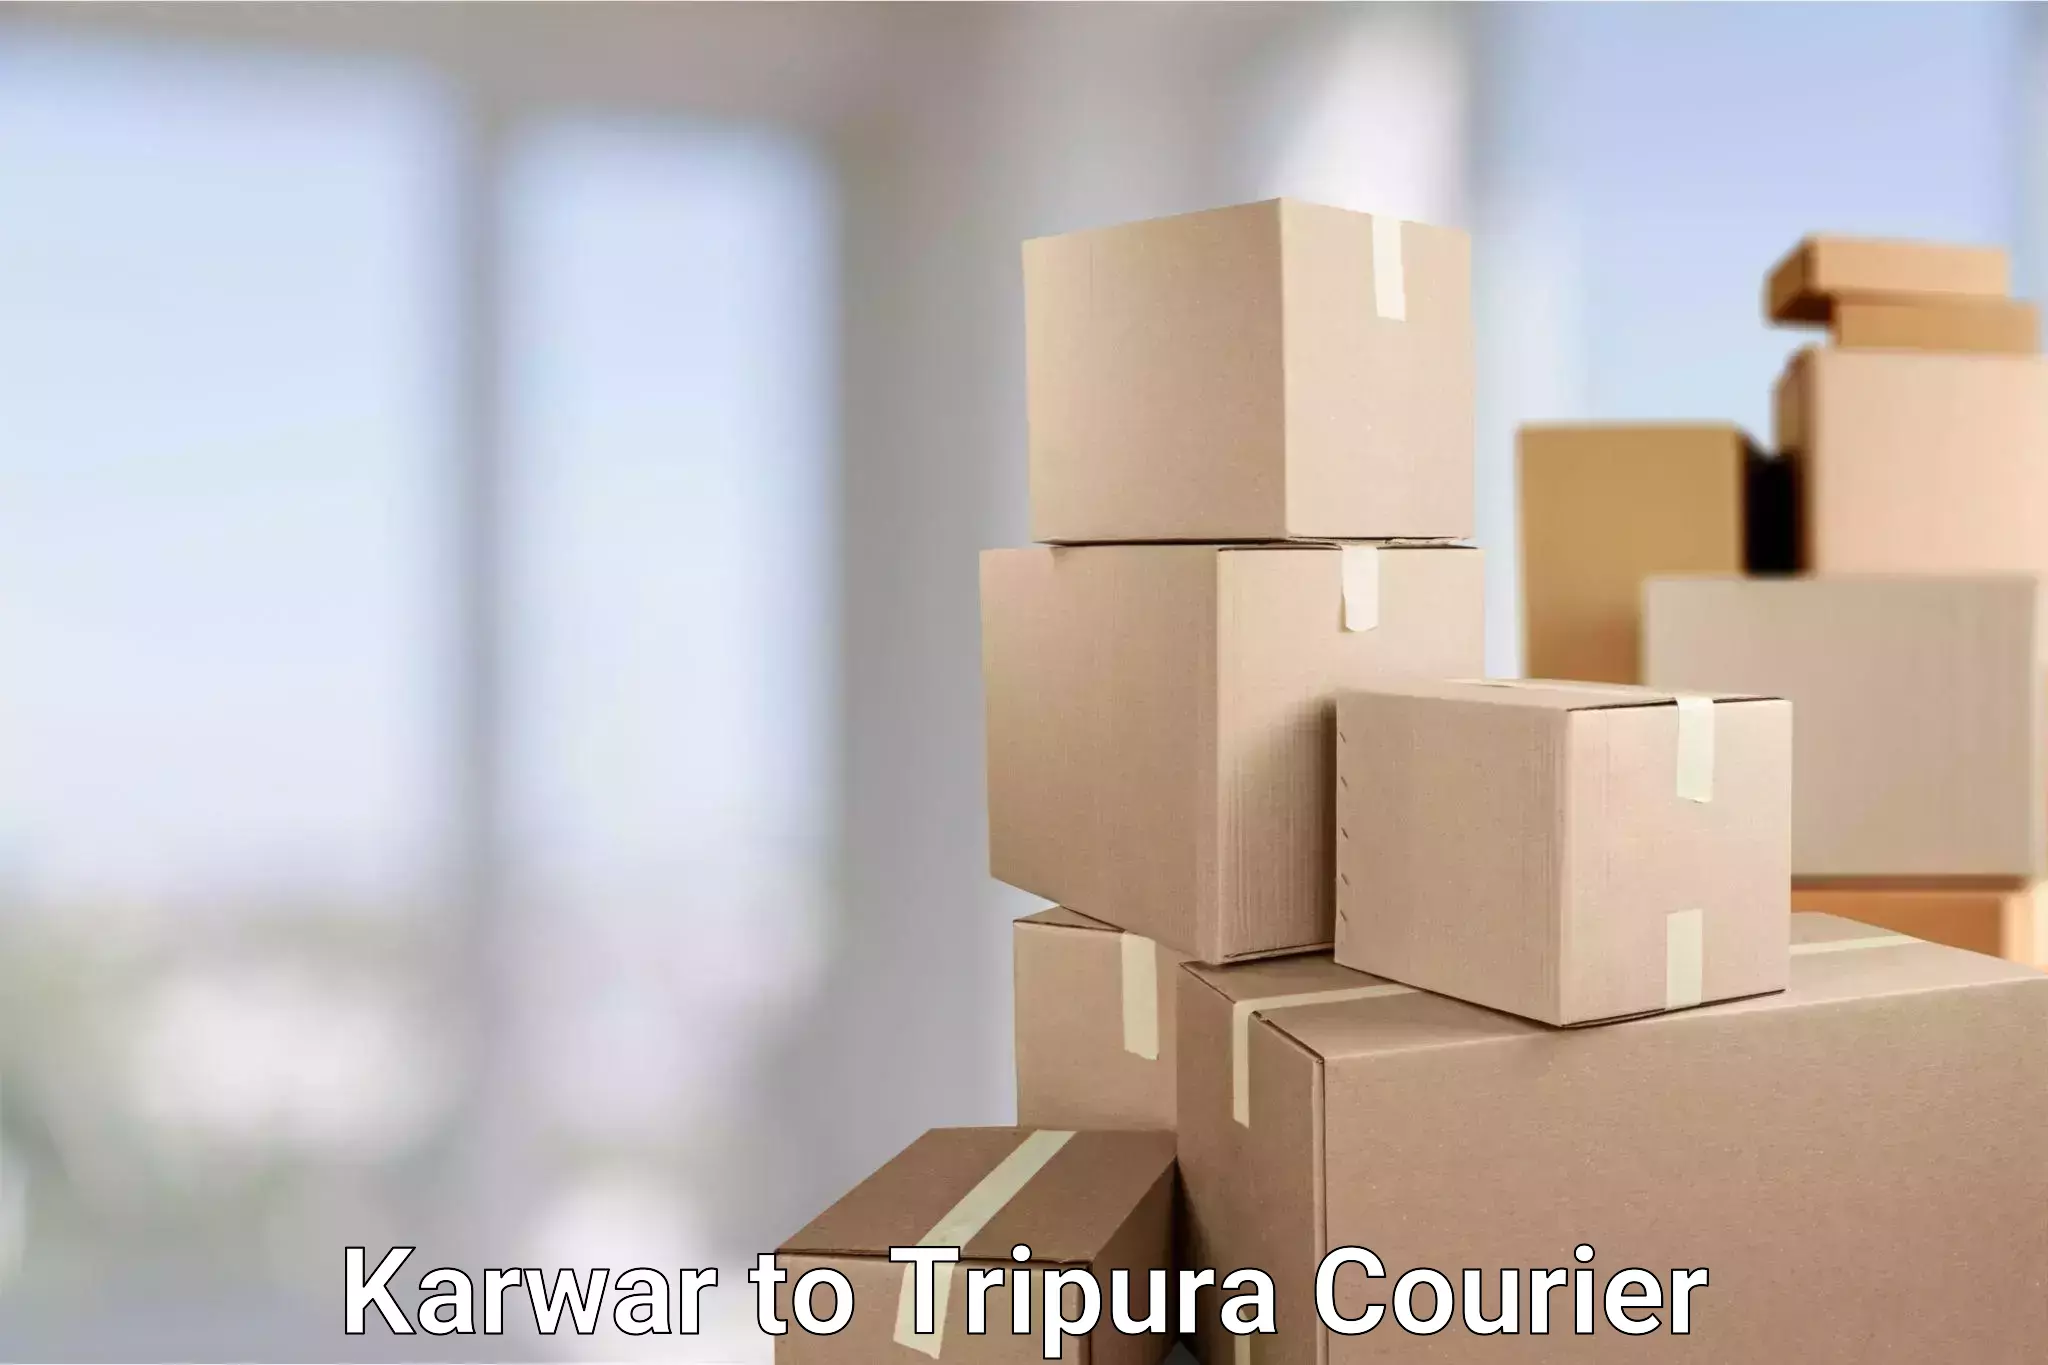 Efficient freight service Karwar to Udaipur Tripura